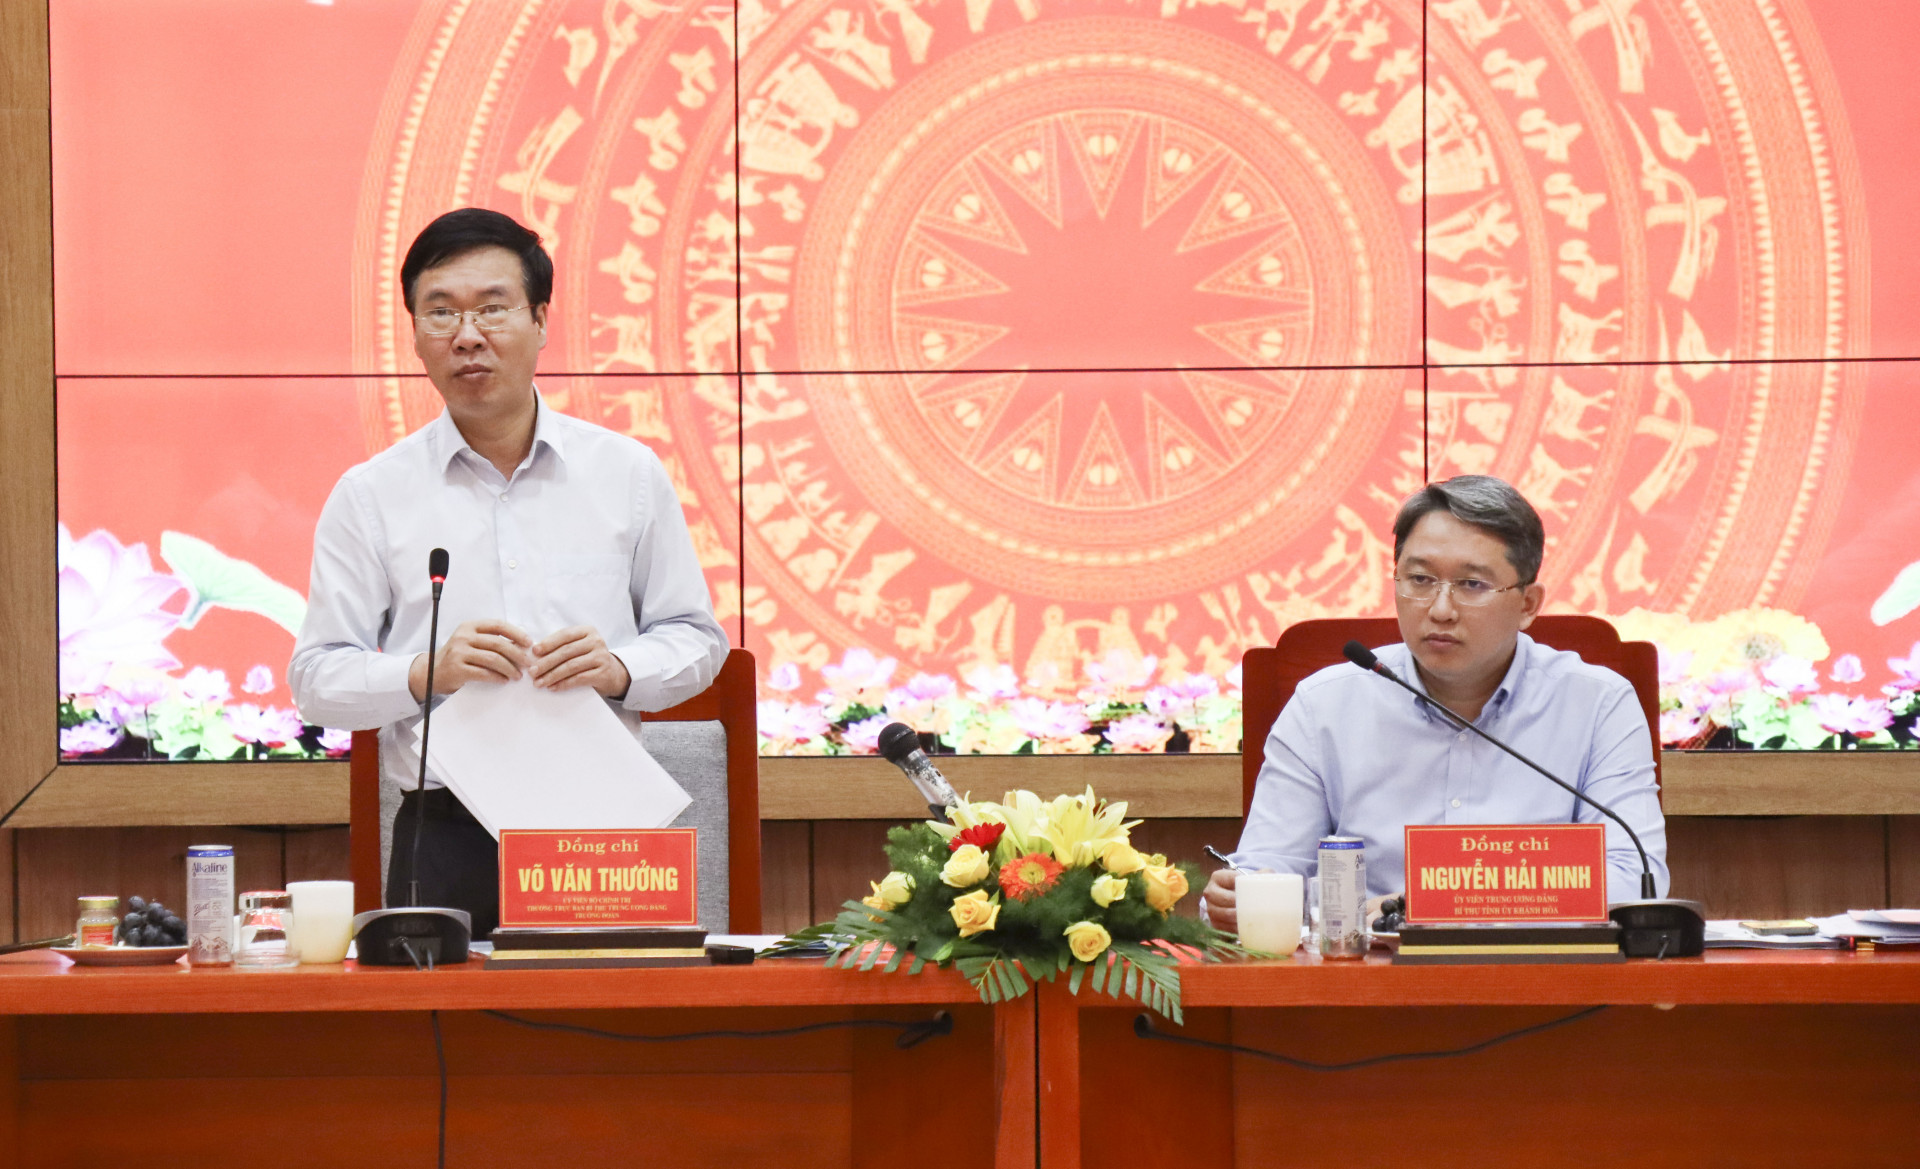 Đồng chí Võ Văn Thương - Ủy viên Bộ Chính trị, Thường trực Ban Bí thư phát biểu tại buổi làm việc với Ban Thường vụ Tỉnh ủy Khánh Hòa